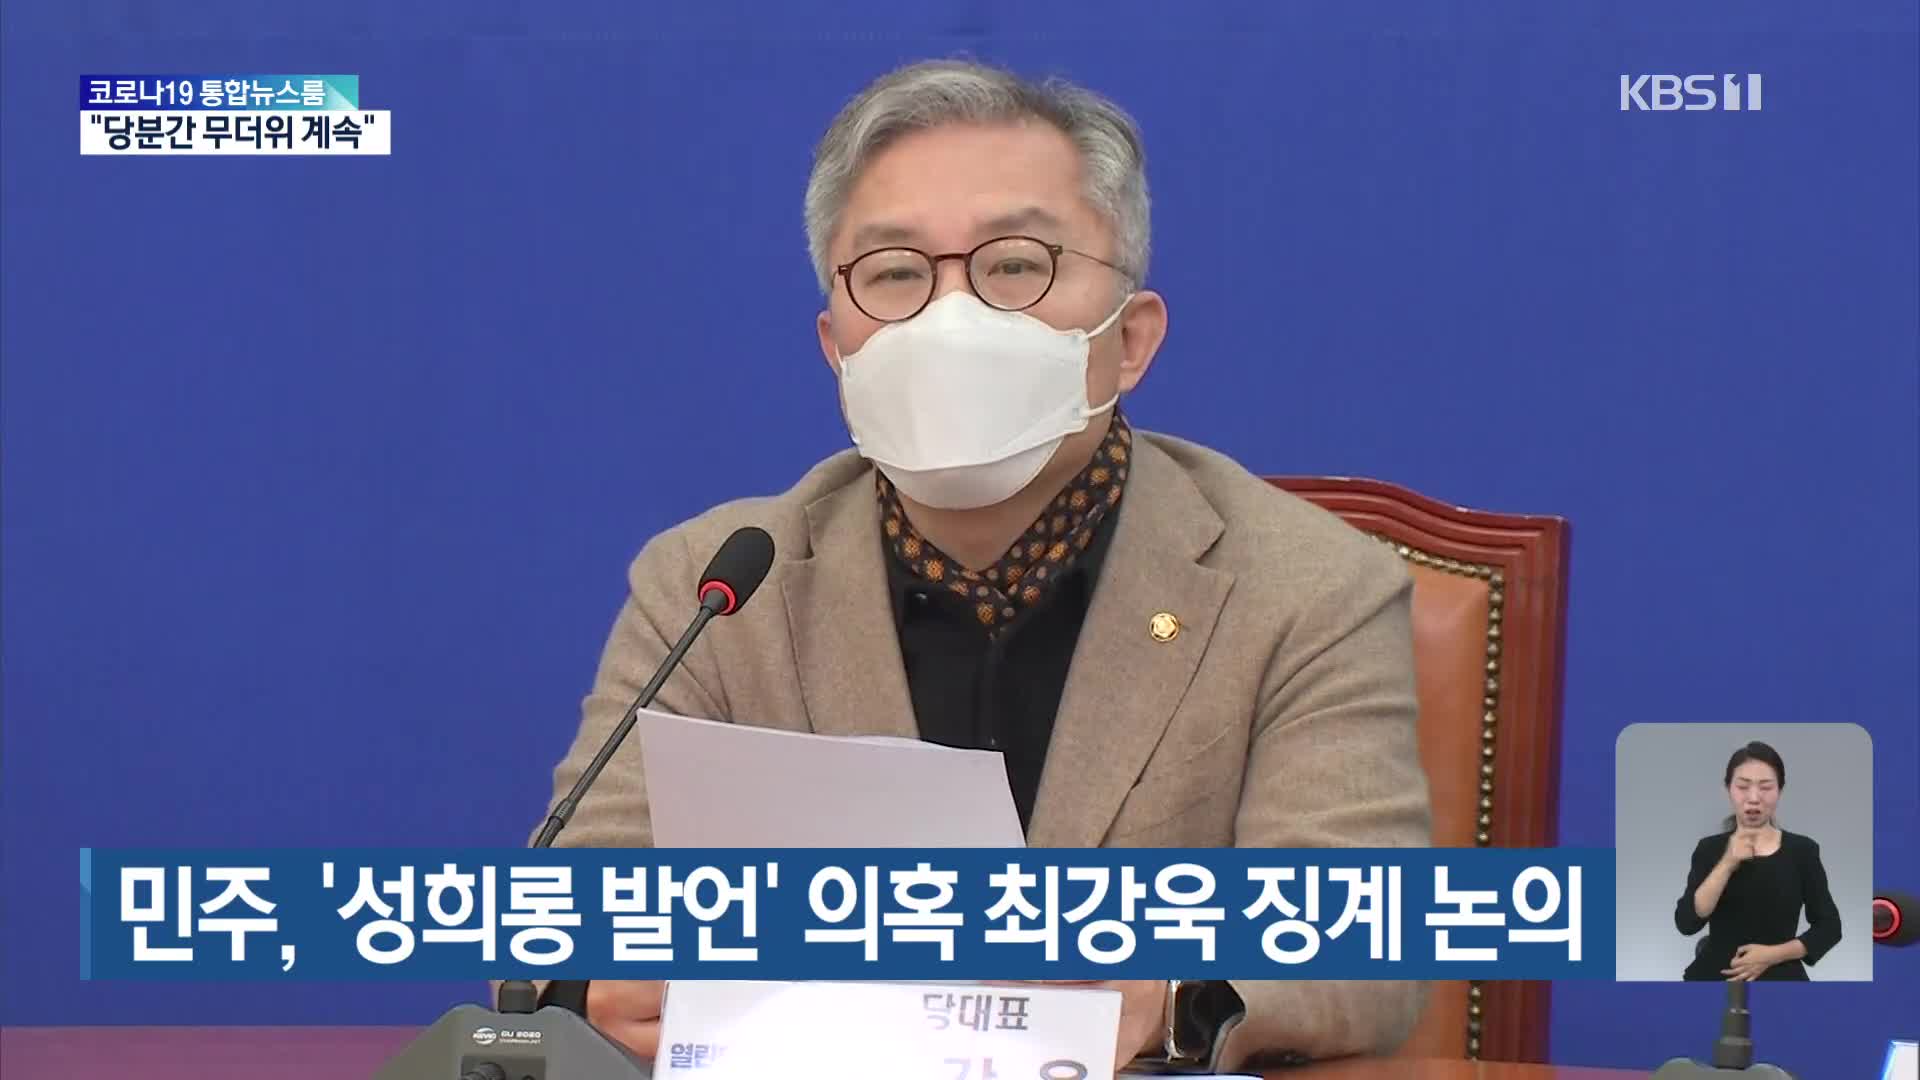 민주, ‘성희롱 발언’ 의혹 최강욱 징계 논의